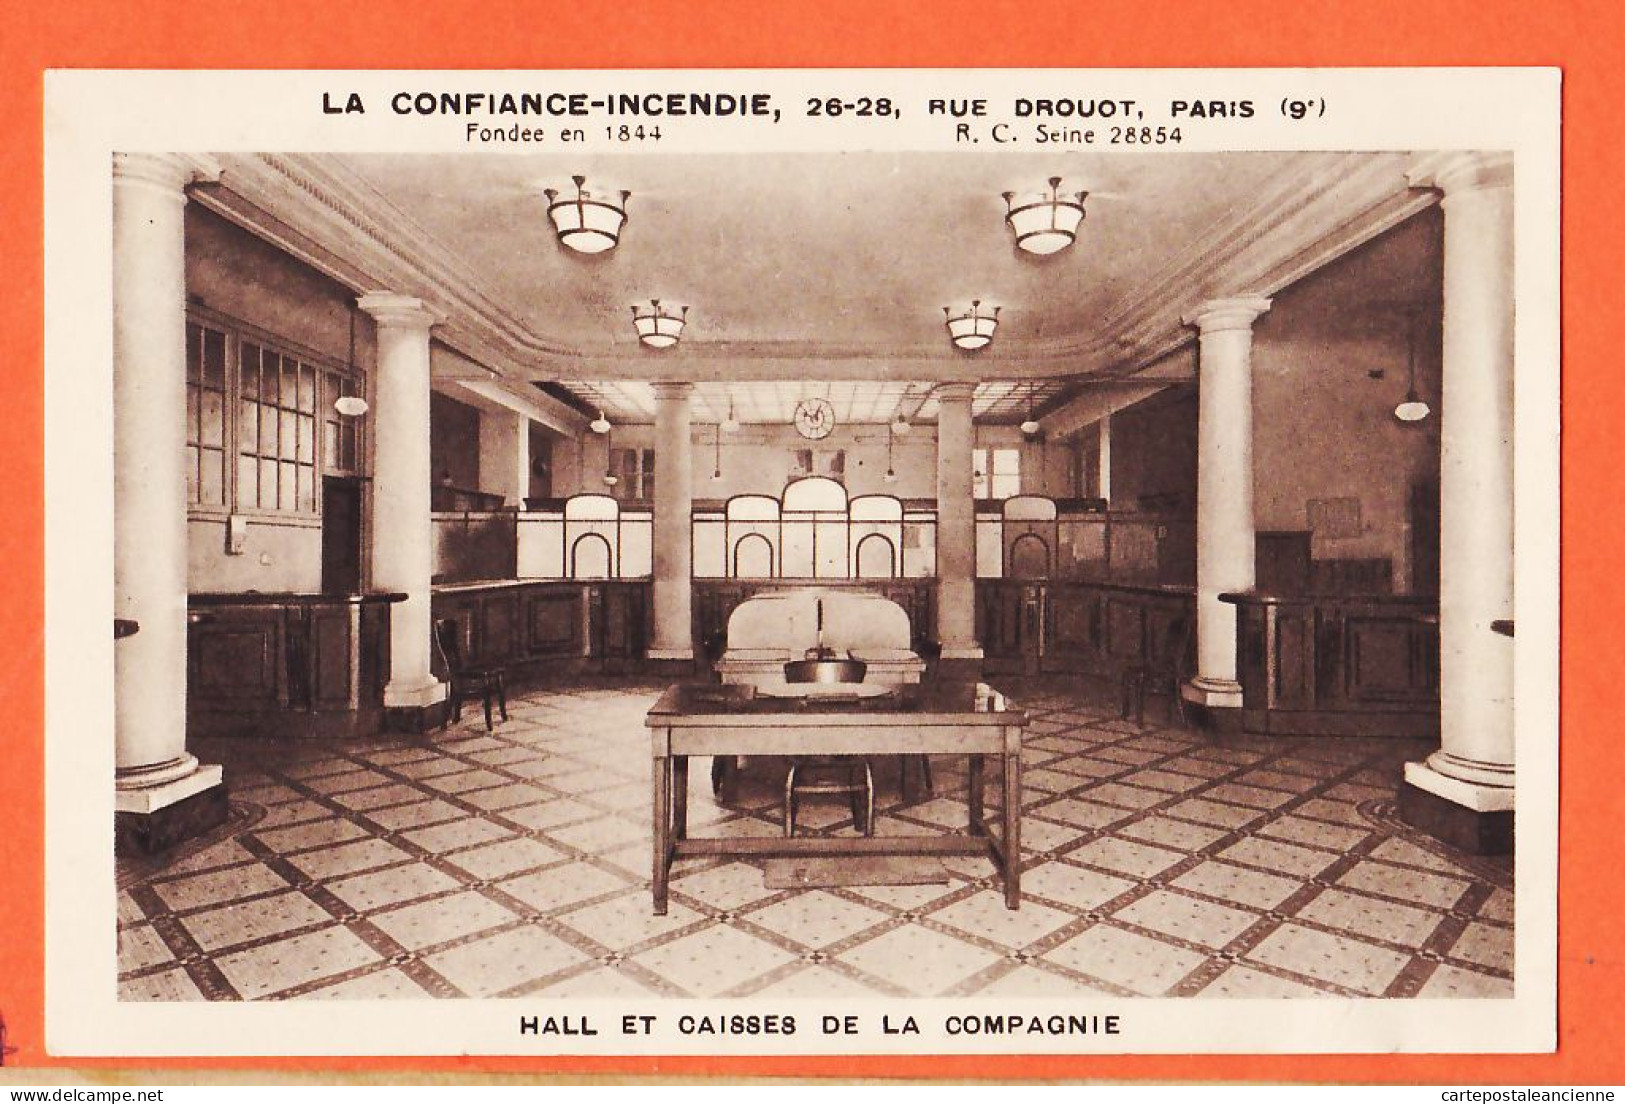 35699 / PARIS IX Assurances LA CONFIANCE-INCENDIE Hall Et Caisses Compagnie 26 Rue DROUOT Cpub 1930s Carte Publicité - District 09